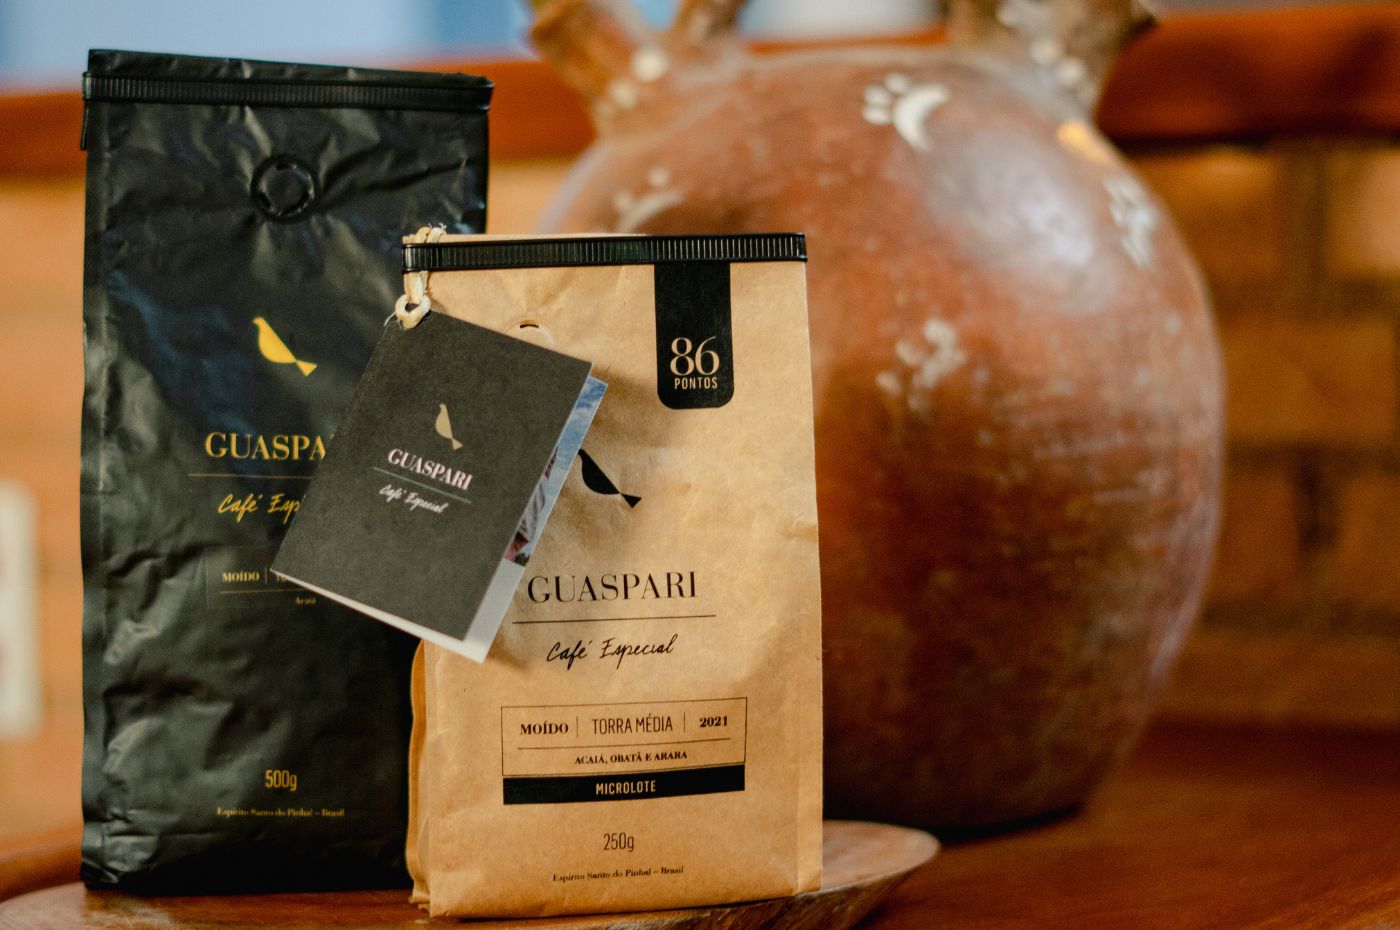 Além de vinhos, a Guaspari possui uma linha de café especial